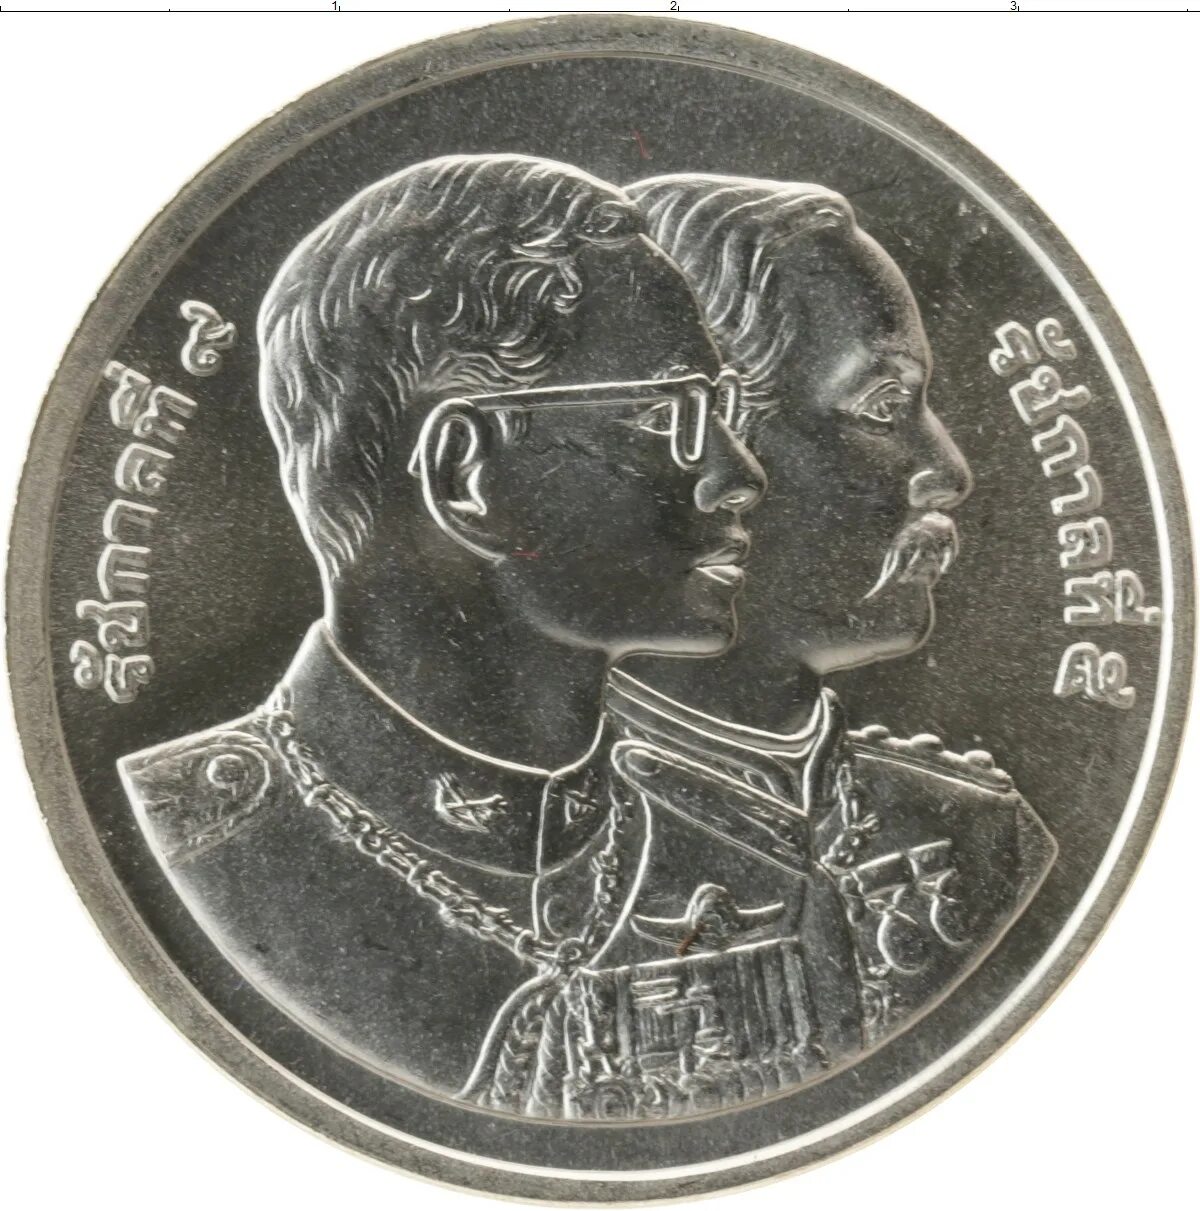 600 бат. 600 Бат Таиланд монета серебро. Монета Таиланд 5 бат 1995. Монета Таиланда 1 бат 1986 года. 600 Батов.